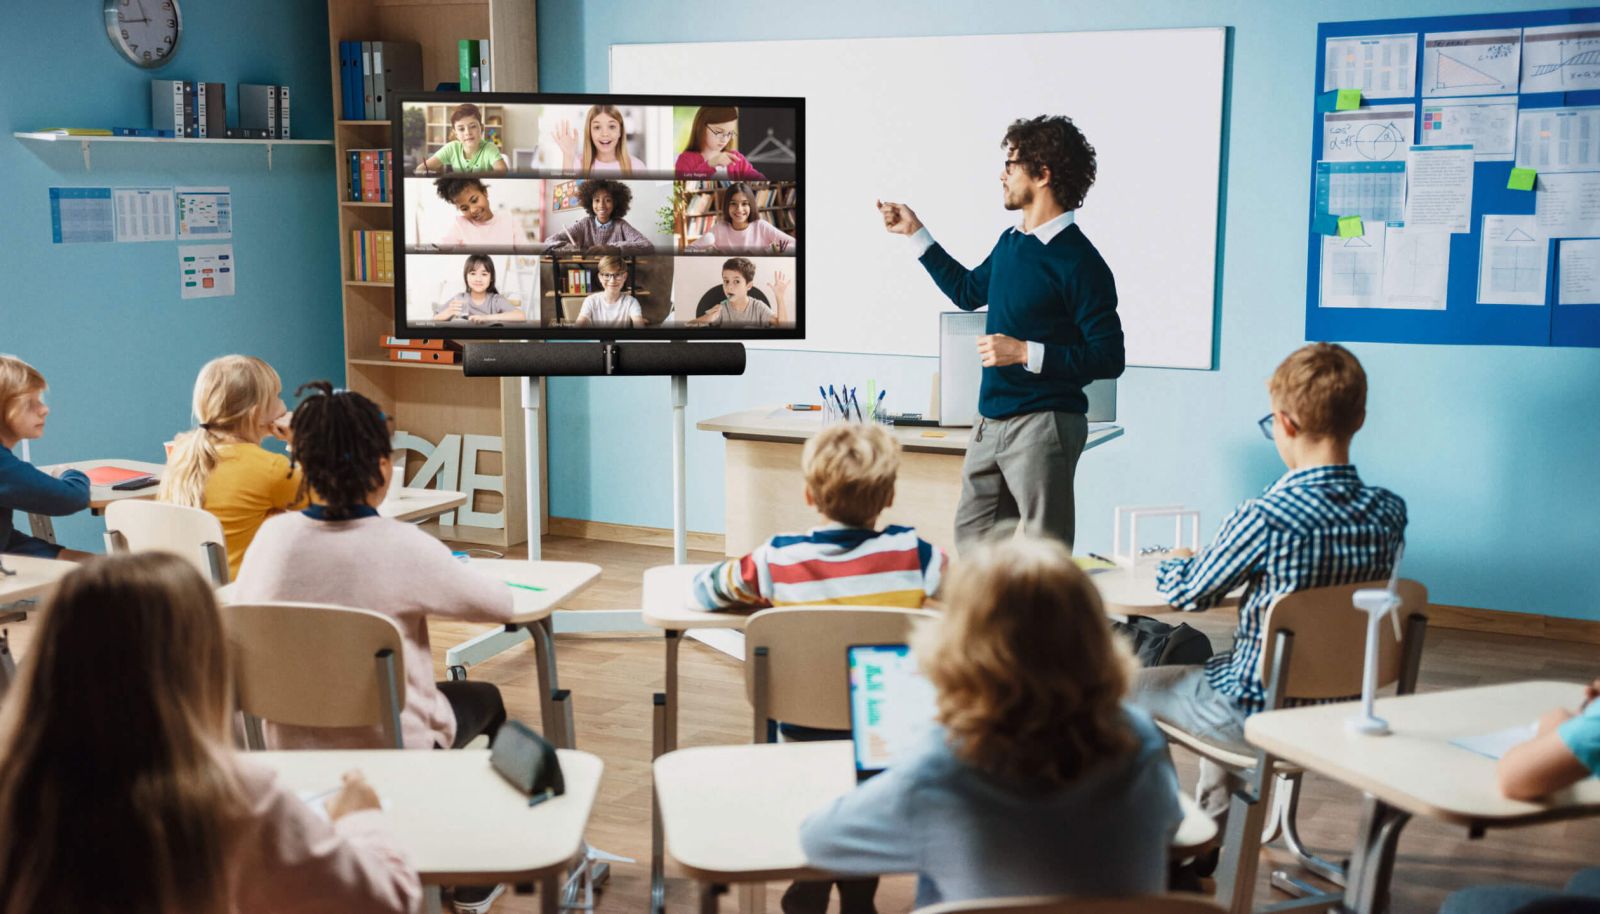 ai trò quan trọng của camera hội nghị truyền hình trong việc dạy học trực tuyến.